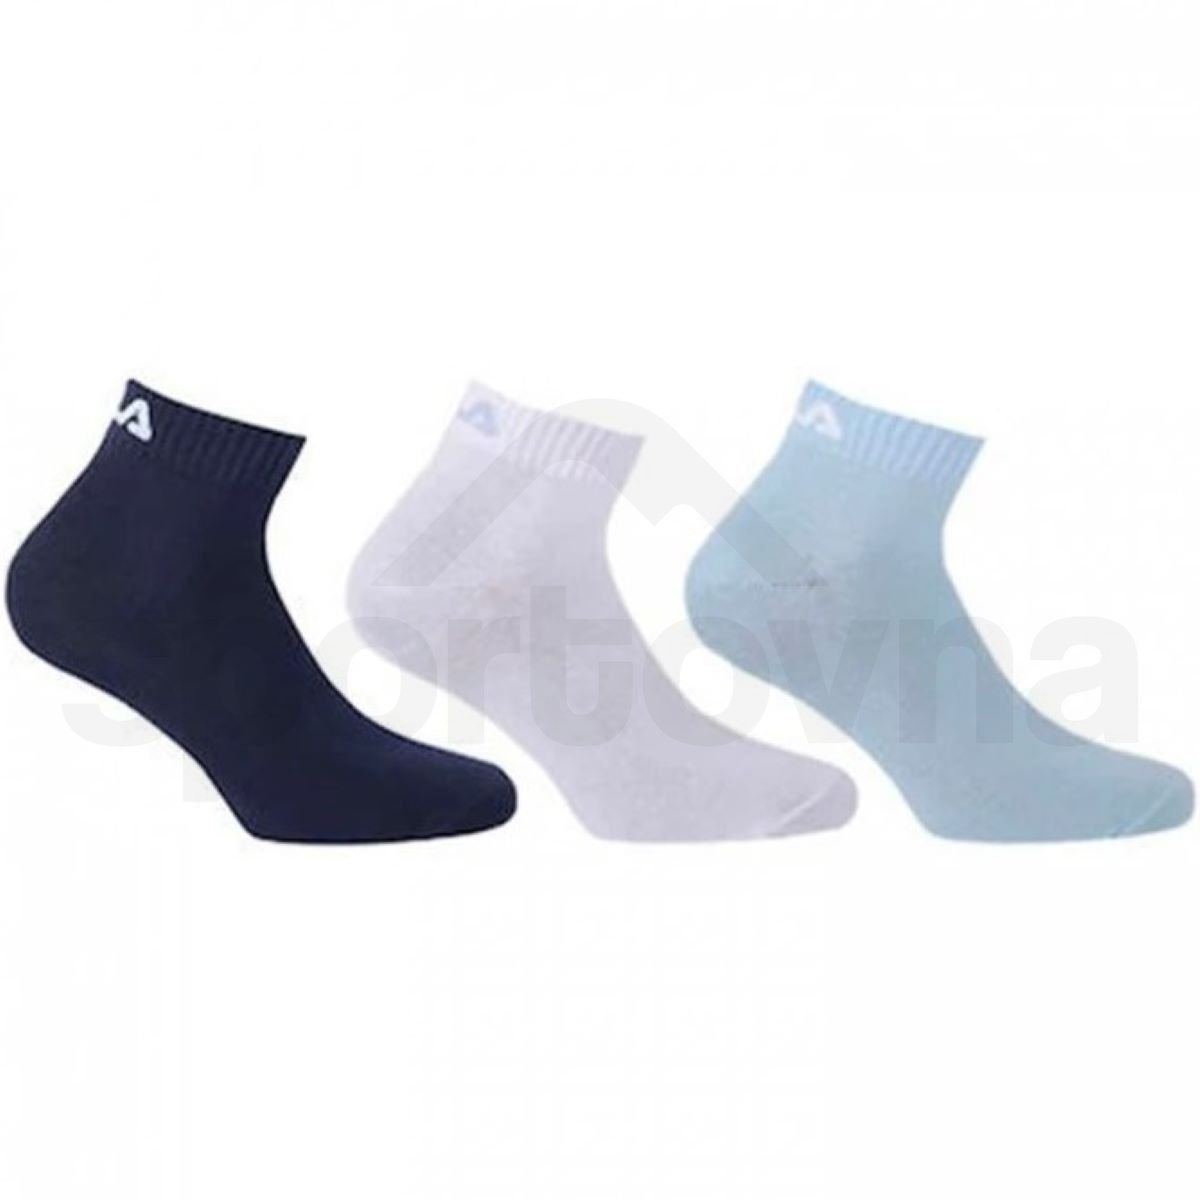 Ponožky Fila Quarter Plain 3 Pack - modrá/bílá